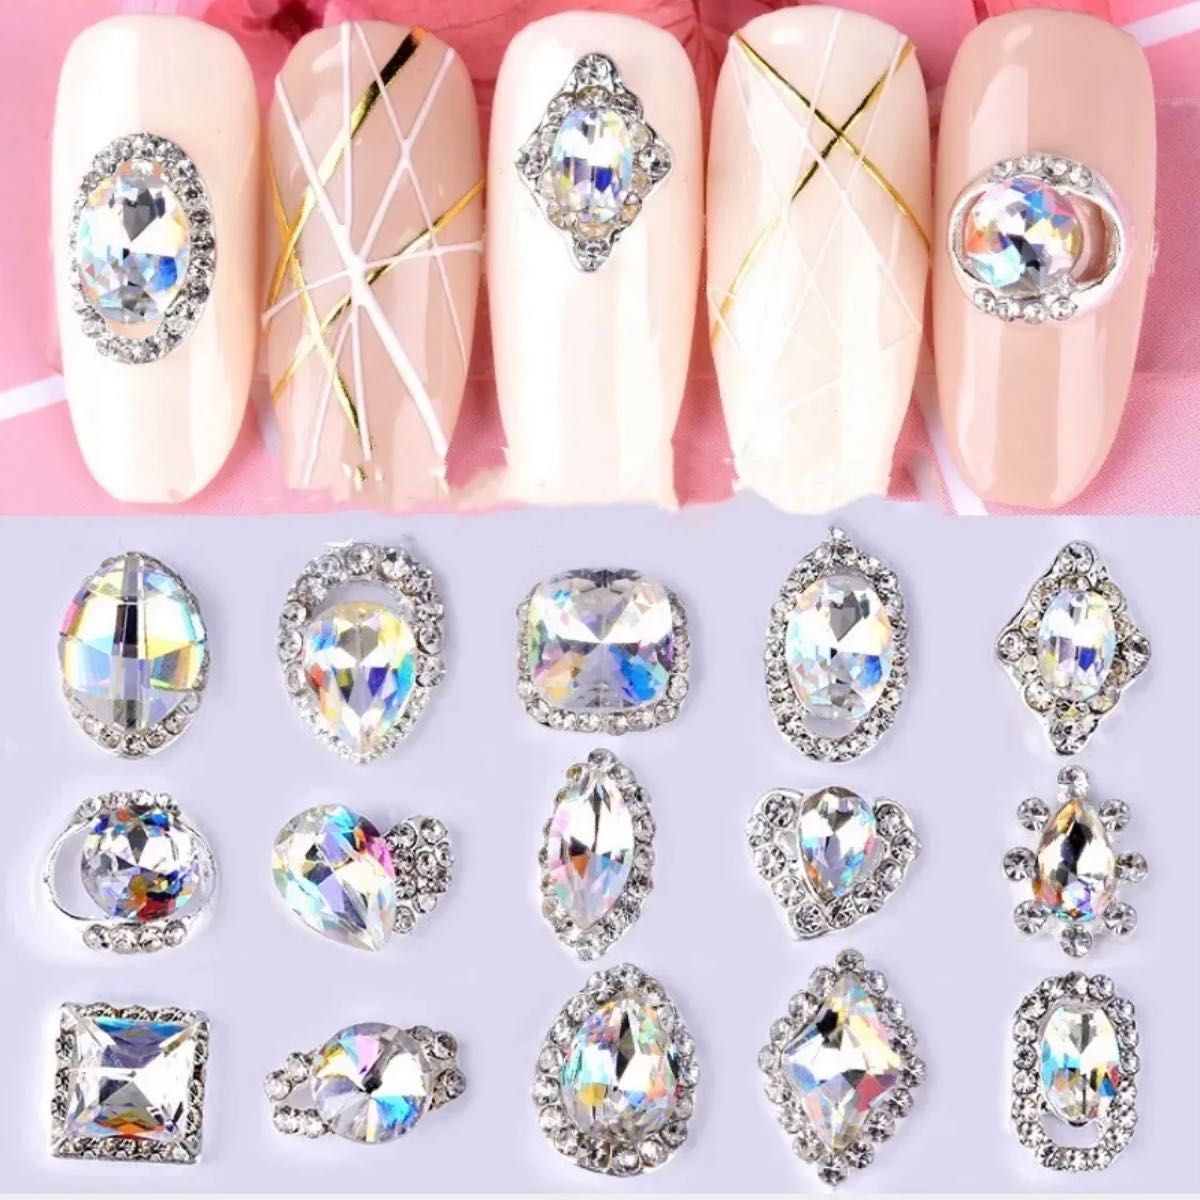 【16pcs】16種類×1 ダイヤモンド ネイル パーツ ジェル しずく リボン ビジュー ストーン ラインストーン 宝石